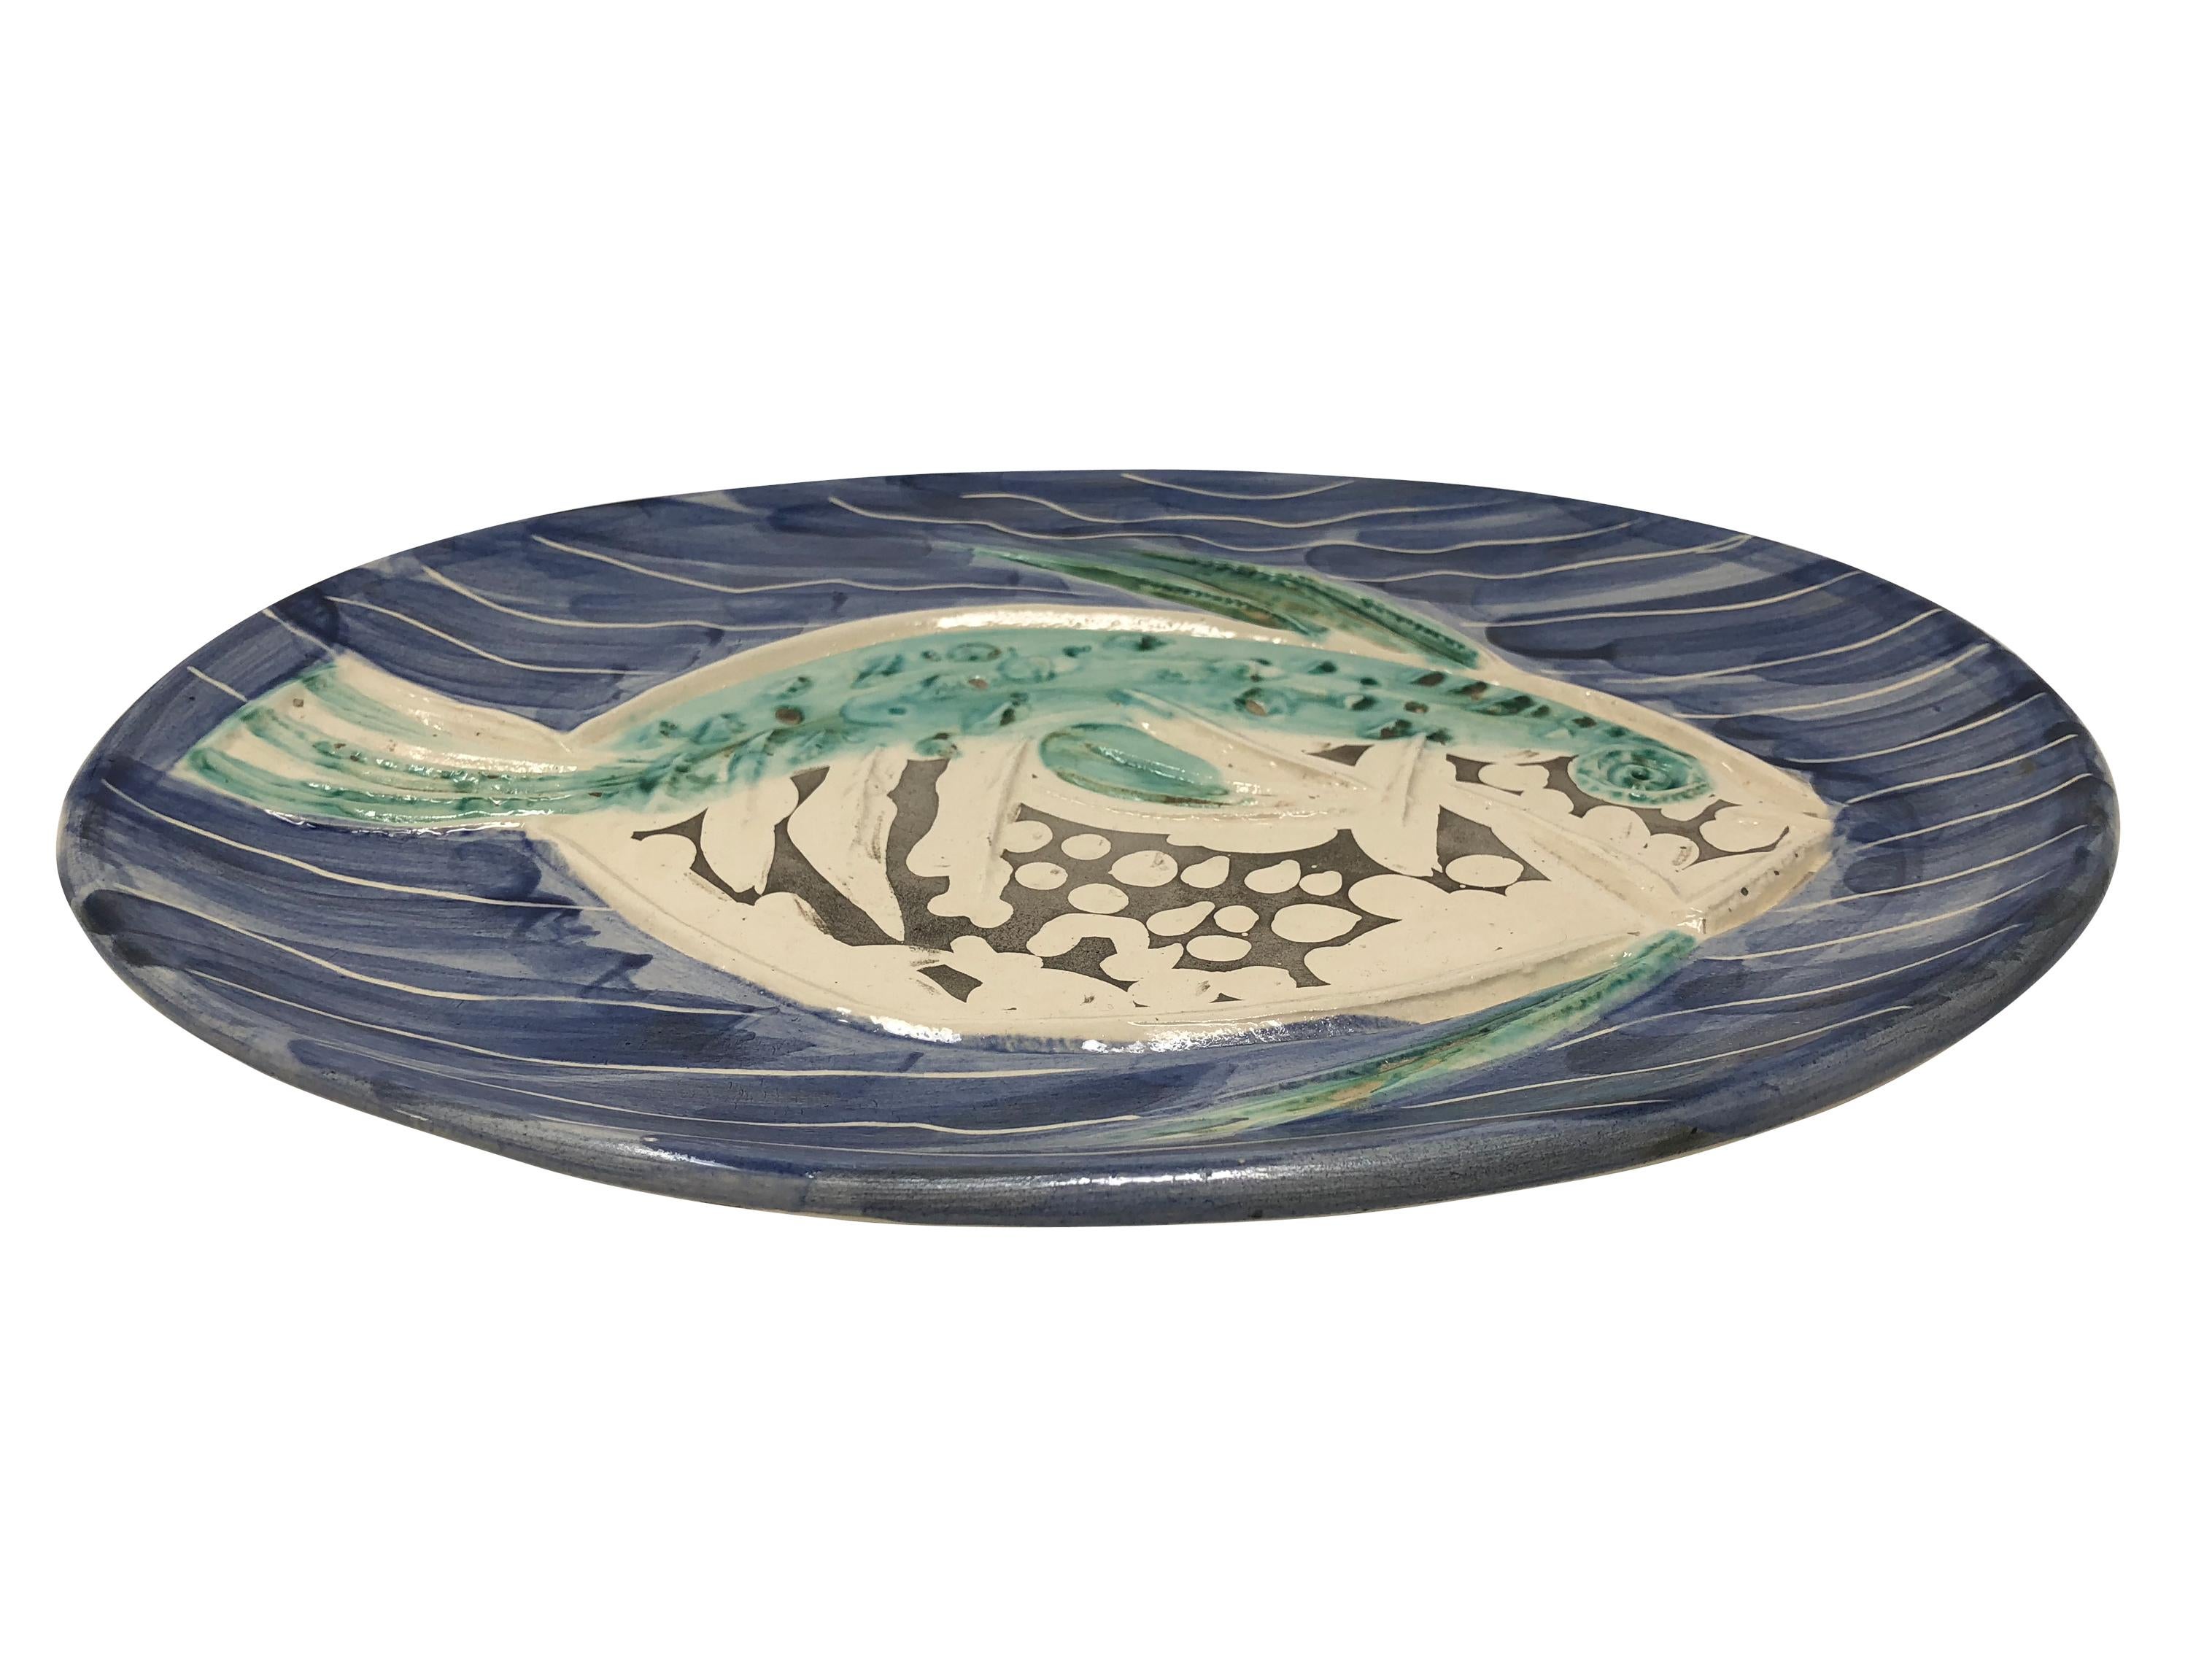 This Picasso ceramic plate 